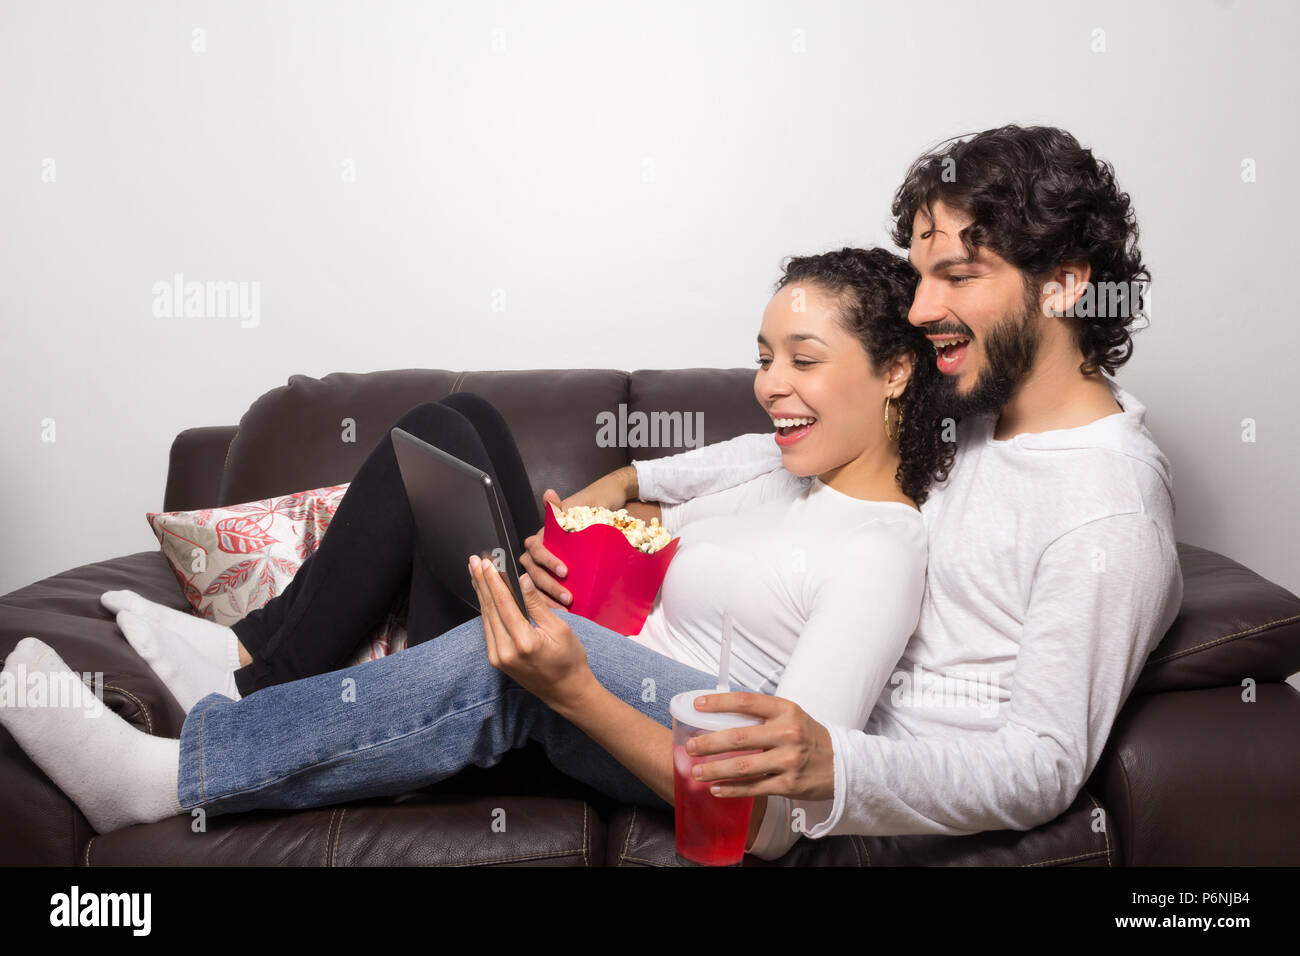 Giovane sdraiato orologi sul video digitale compressa. L uomo e la donna  sono sempre sorridenti. Essi sono sul divano di casa di riposo. Le attività  per il tempo libero e stare insieme